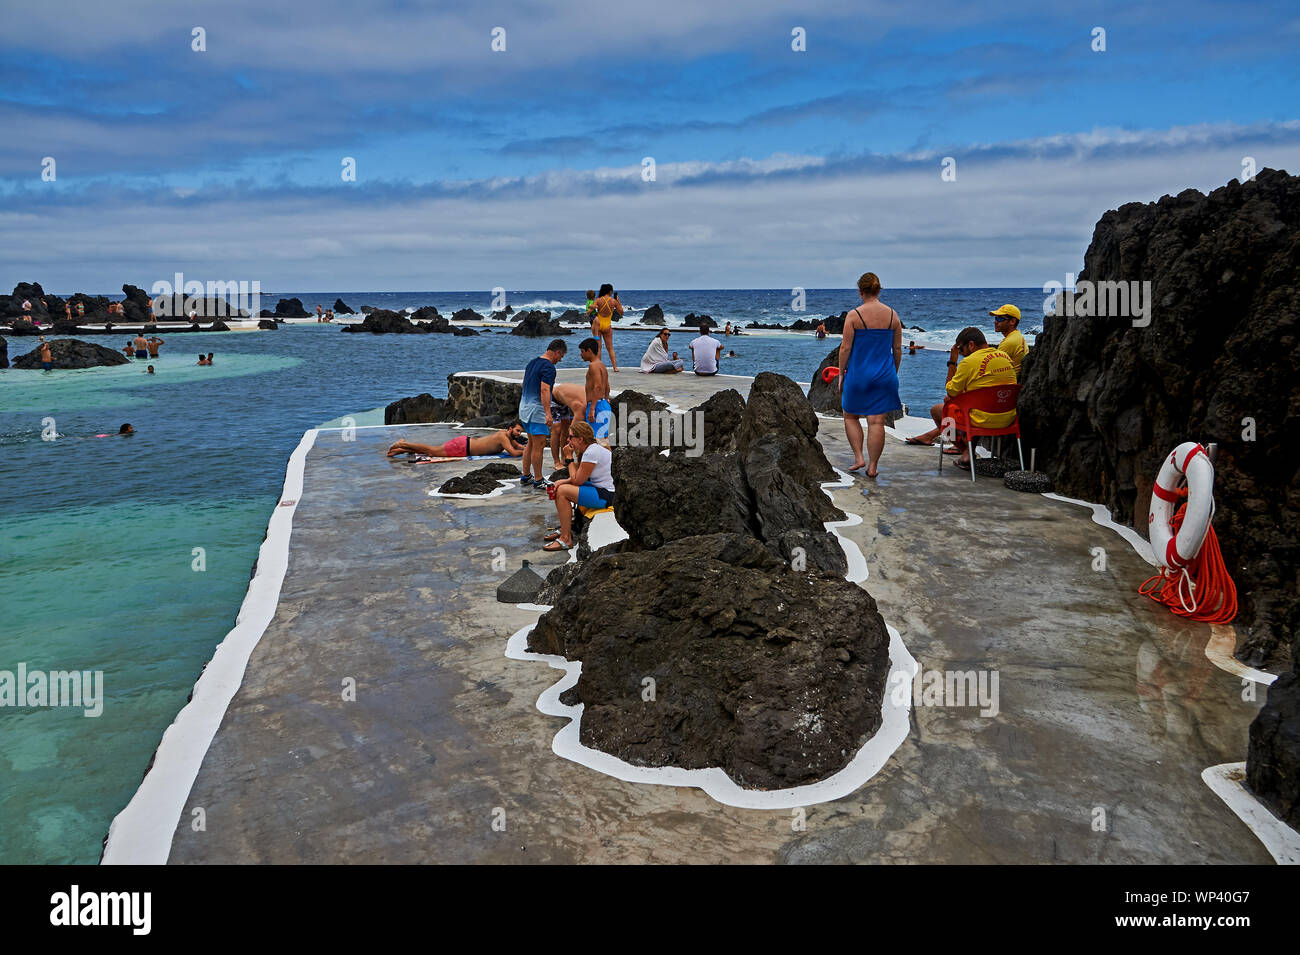 Porto Moniz, Madeira y turistas disfrutando del piscines, piscinas naturales creadas por las formaciones de lava y alimentado por el Océano Atlántico. Foto de stock